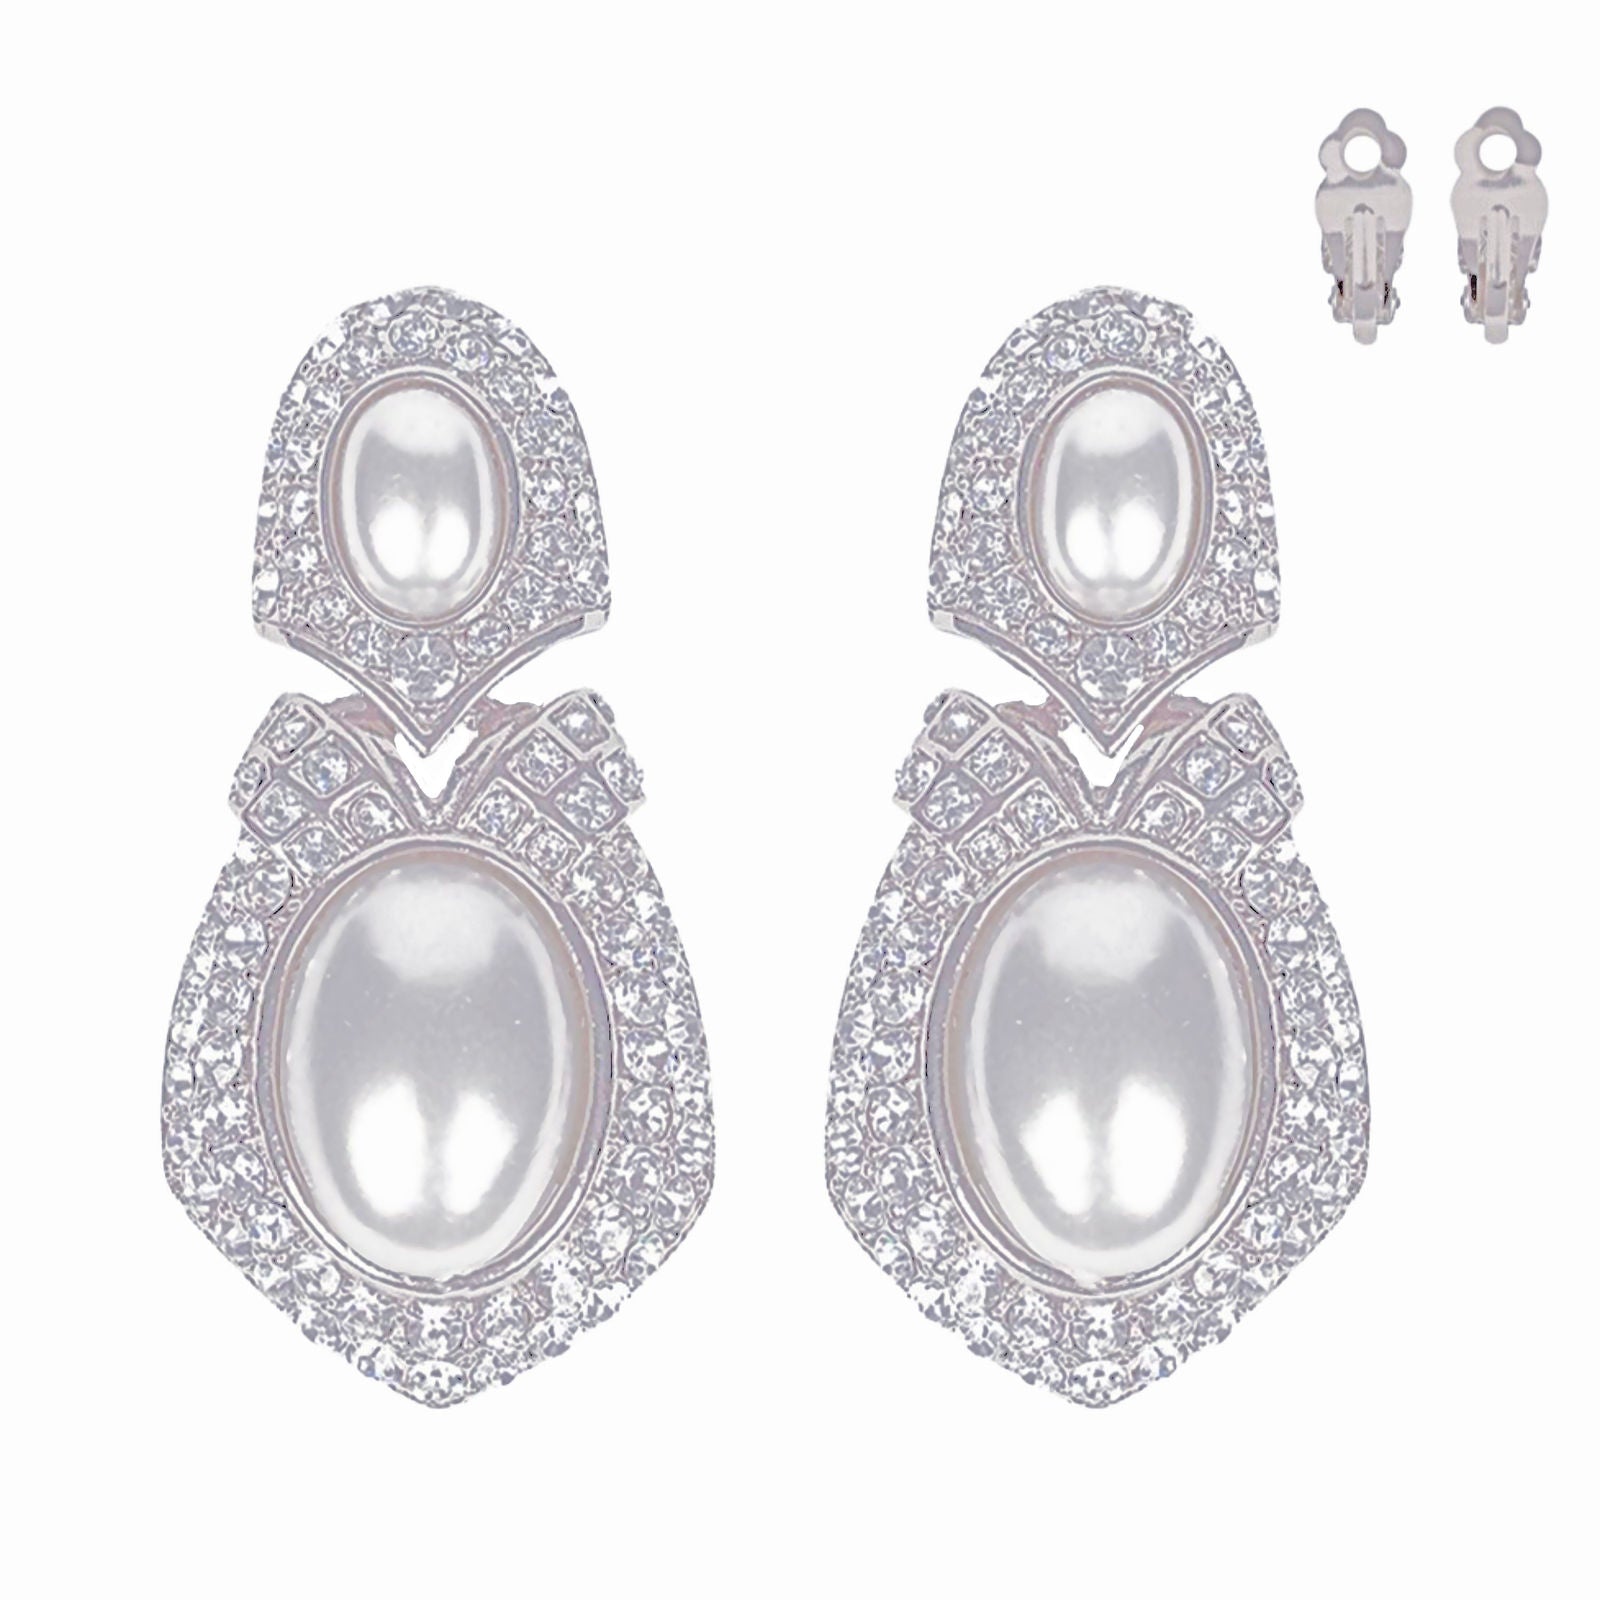 Clip On Silver Elegant Medium Earrings for Women